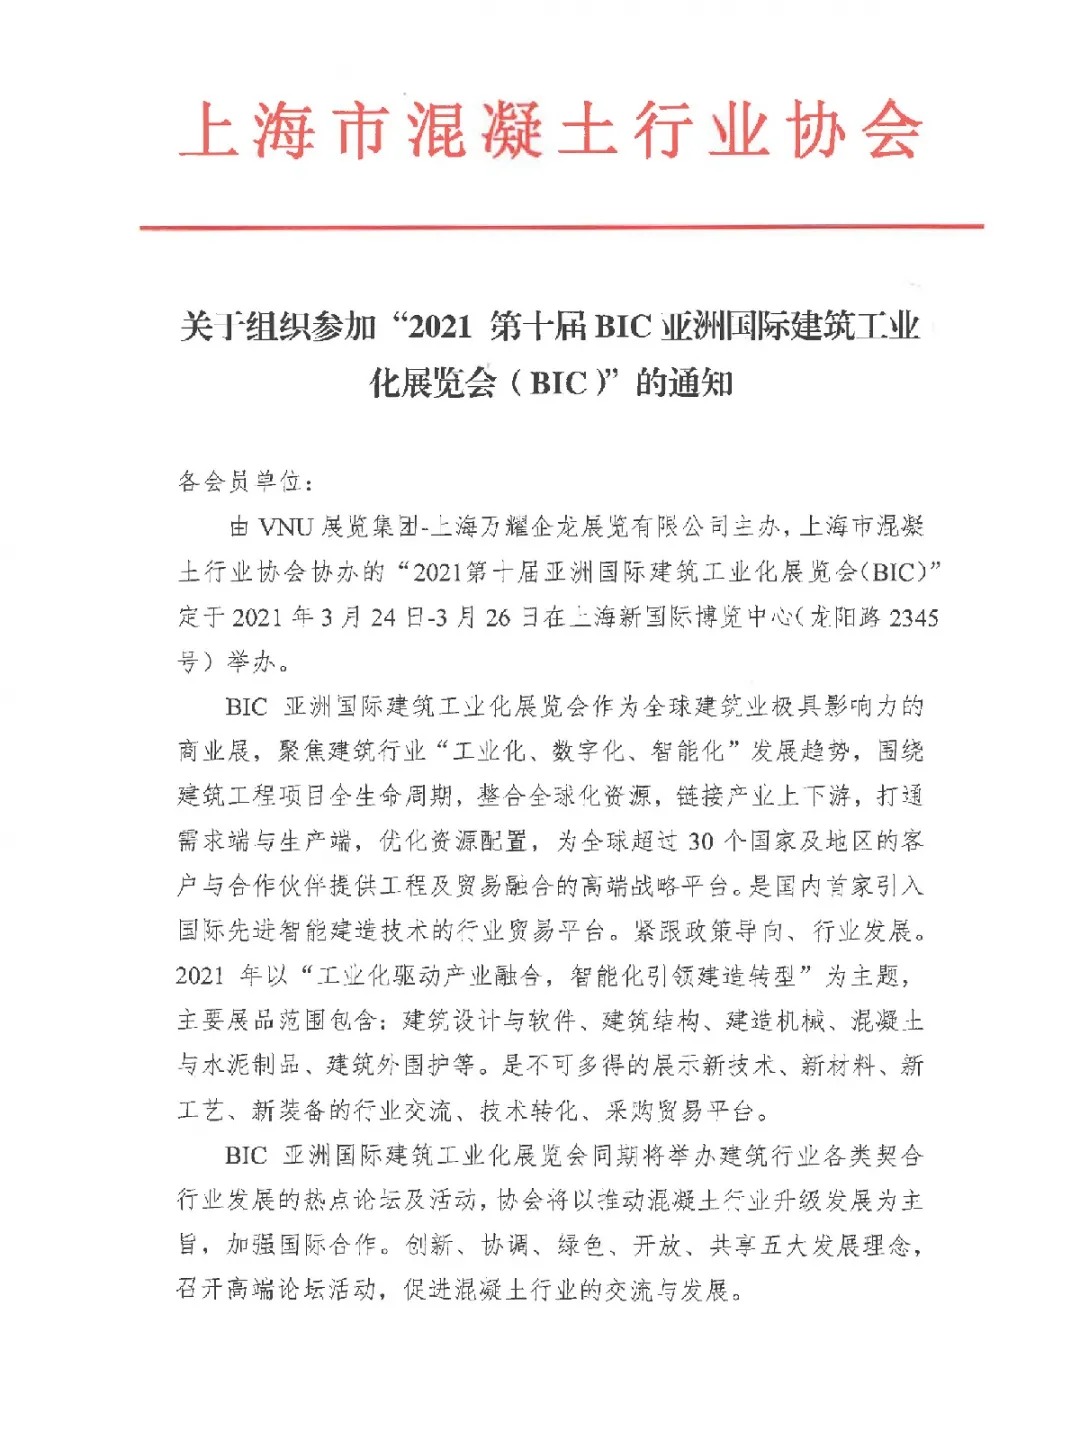 红头文件 | 上海市混凝土行业协会与VNU就BIC2021达成合作，全力支持3月落地上海新国际博览中心